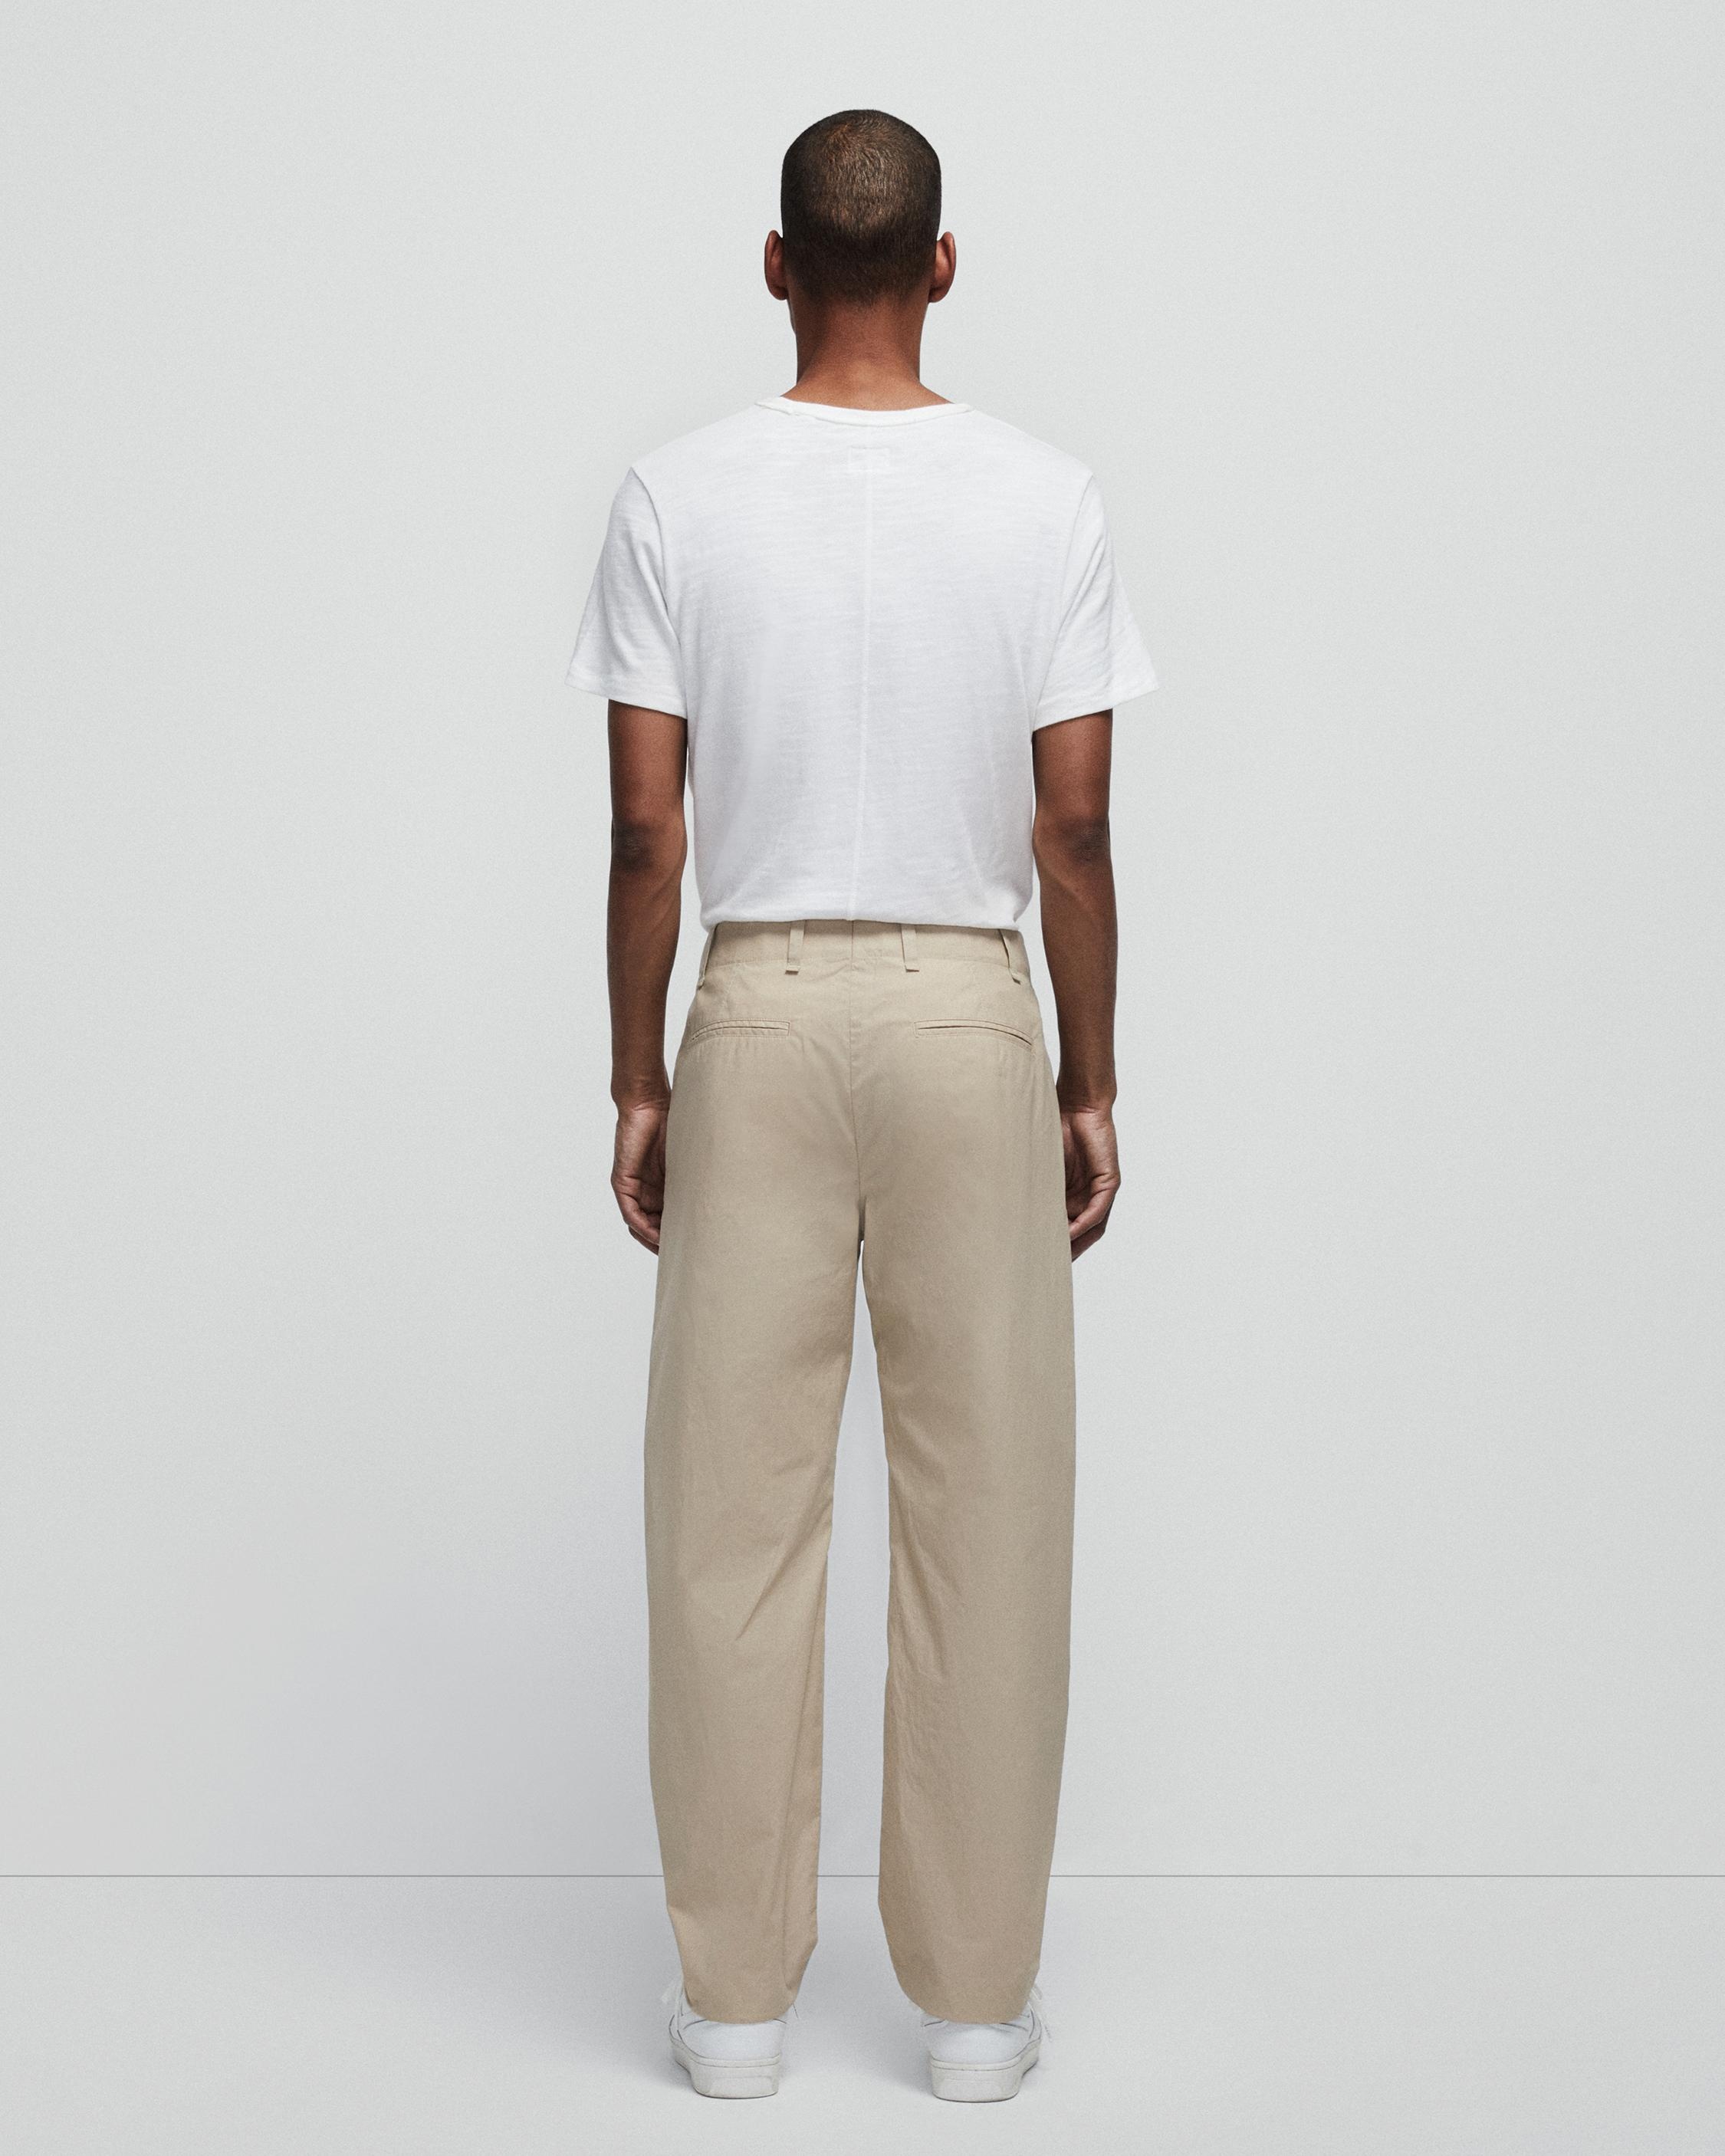 Shift Paper Cotton Trouser
Slim Fit Pant - 6